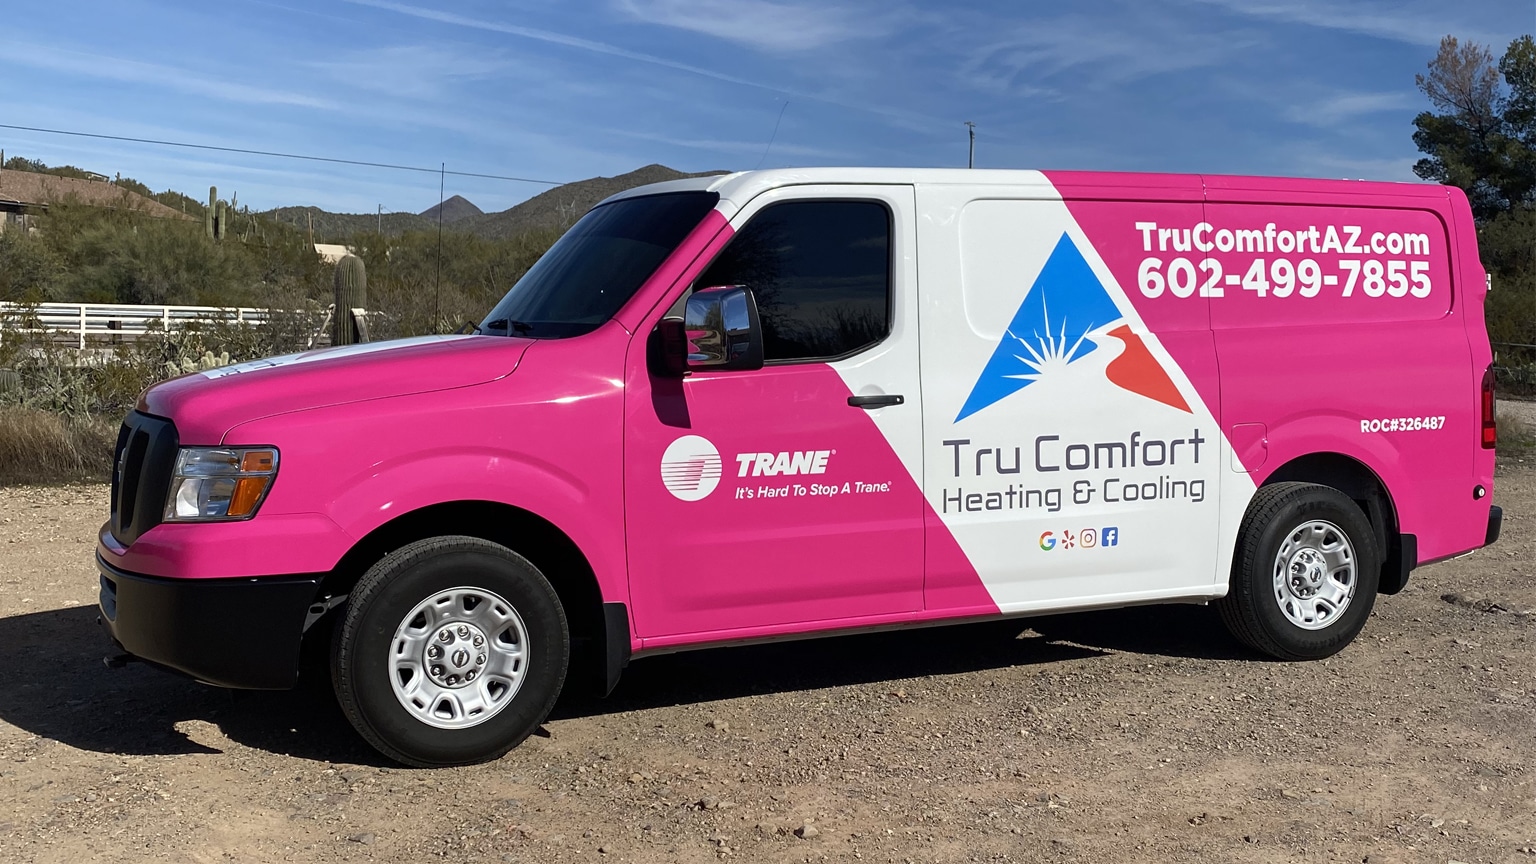 Tru Comfort Heating & Cooling Truck